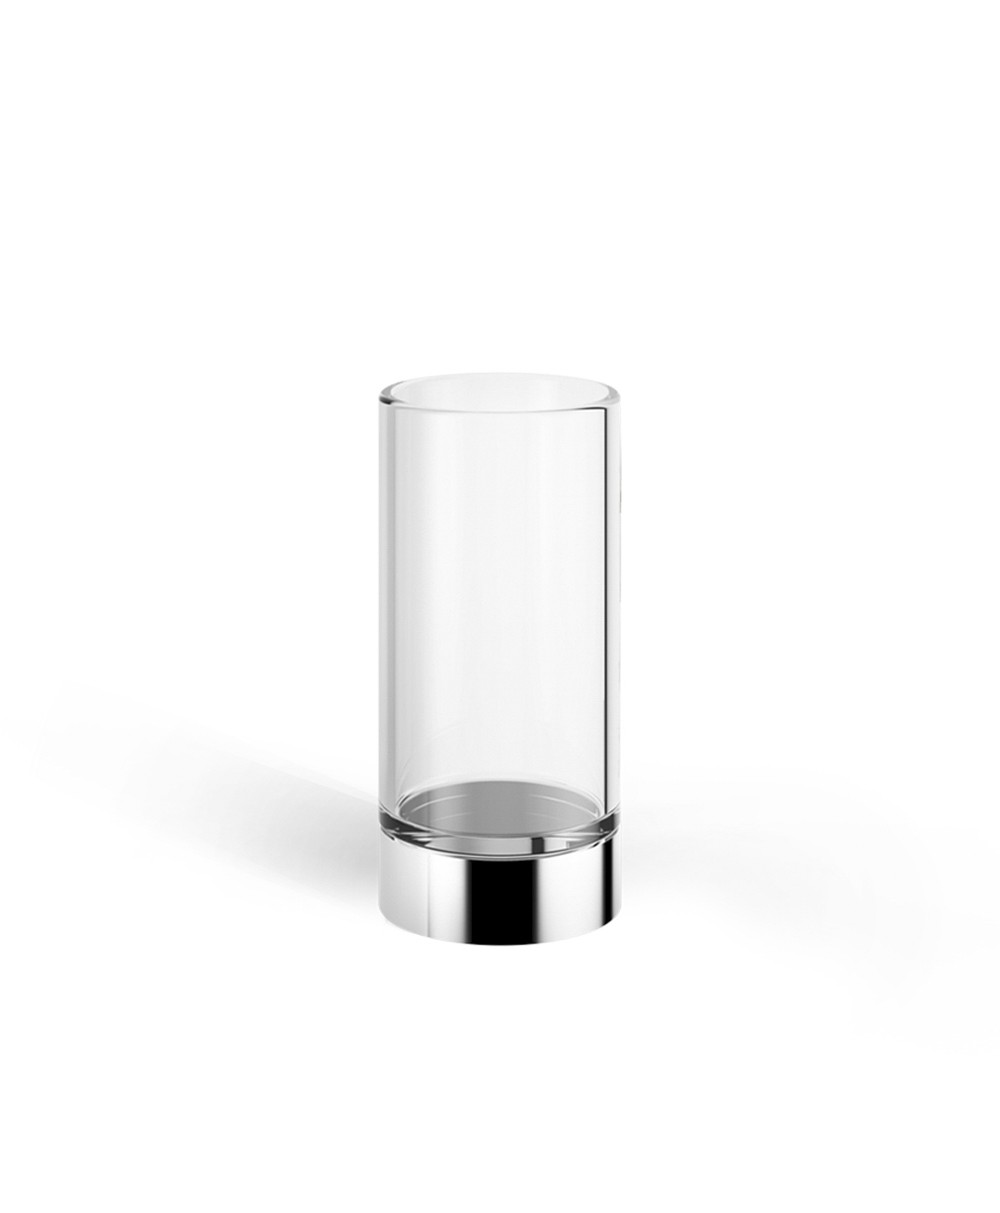 Hier abgebildet ist ein Mundglas von Decor Walther – im Onlineshop RAUM concept store